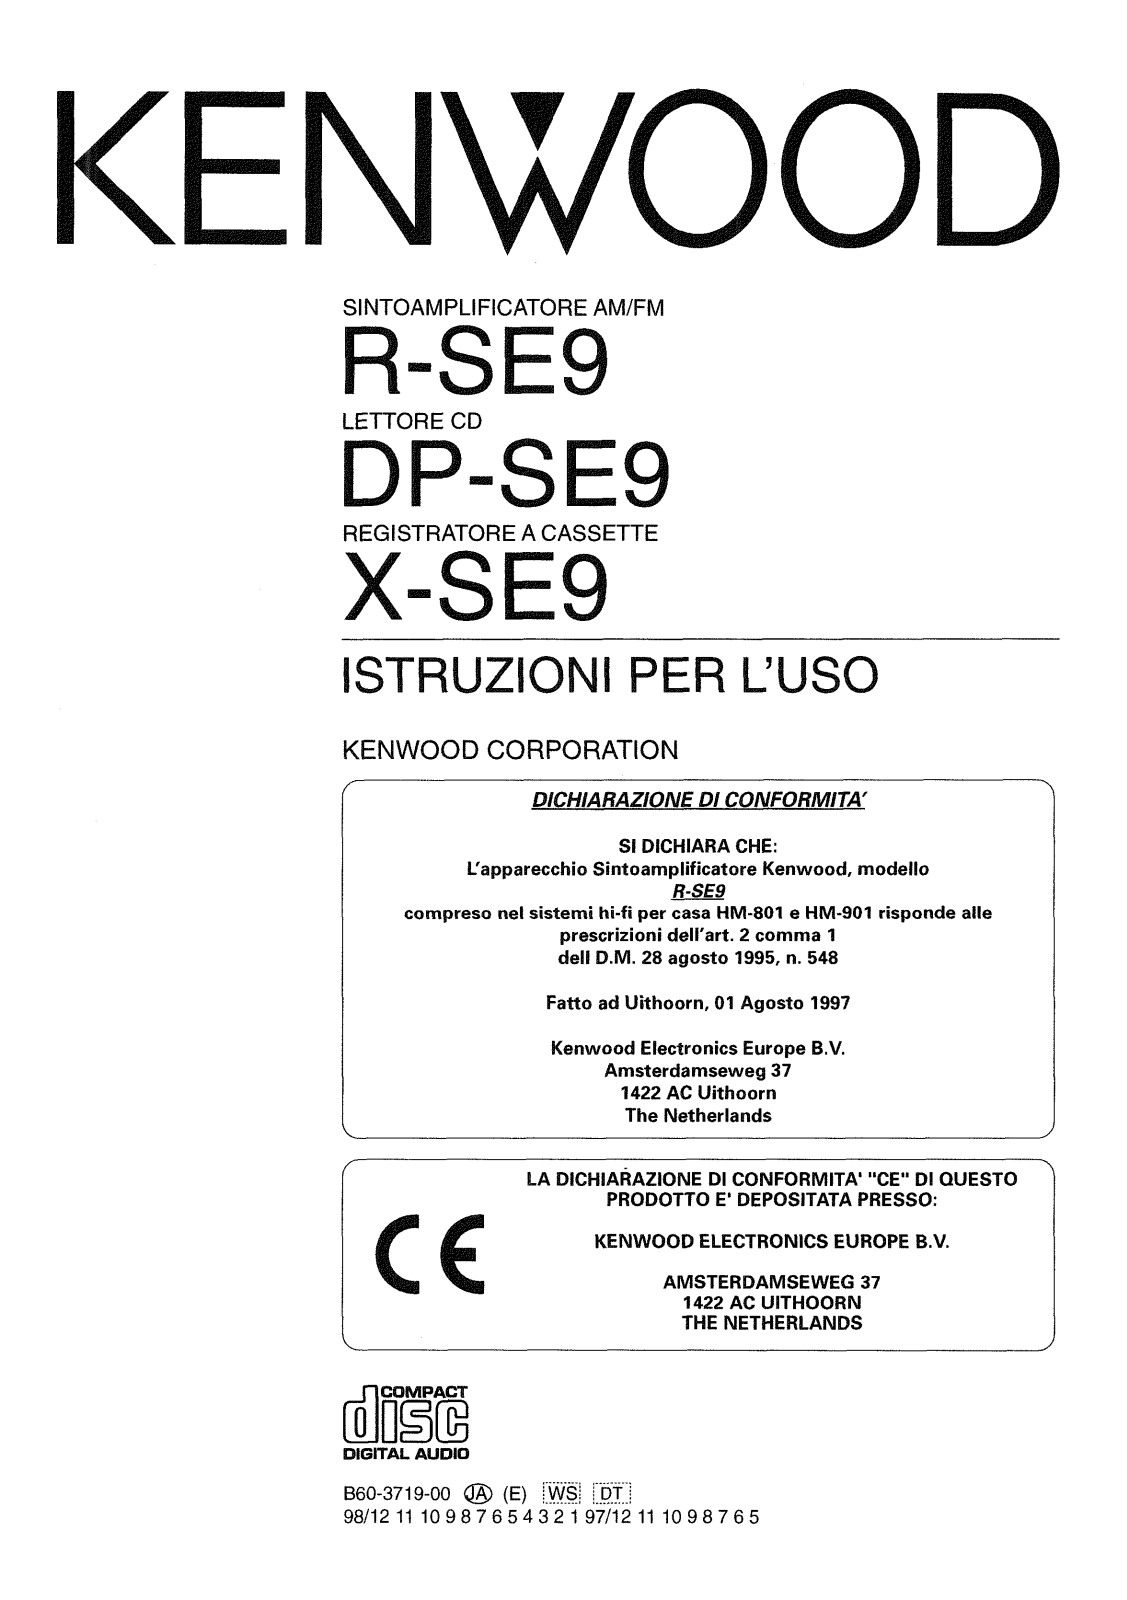 Kenwood DP-SE9, R-SE9, X-SE9 Manual